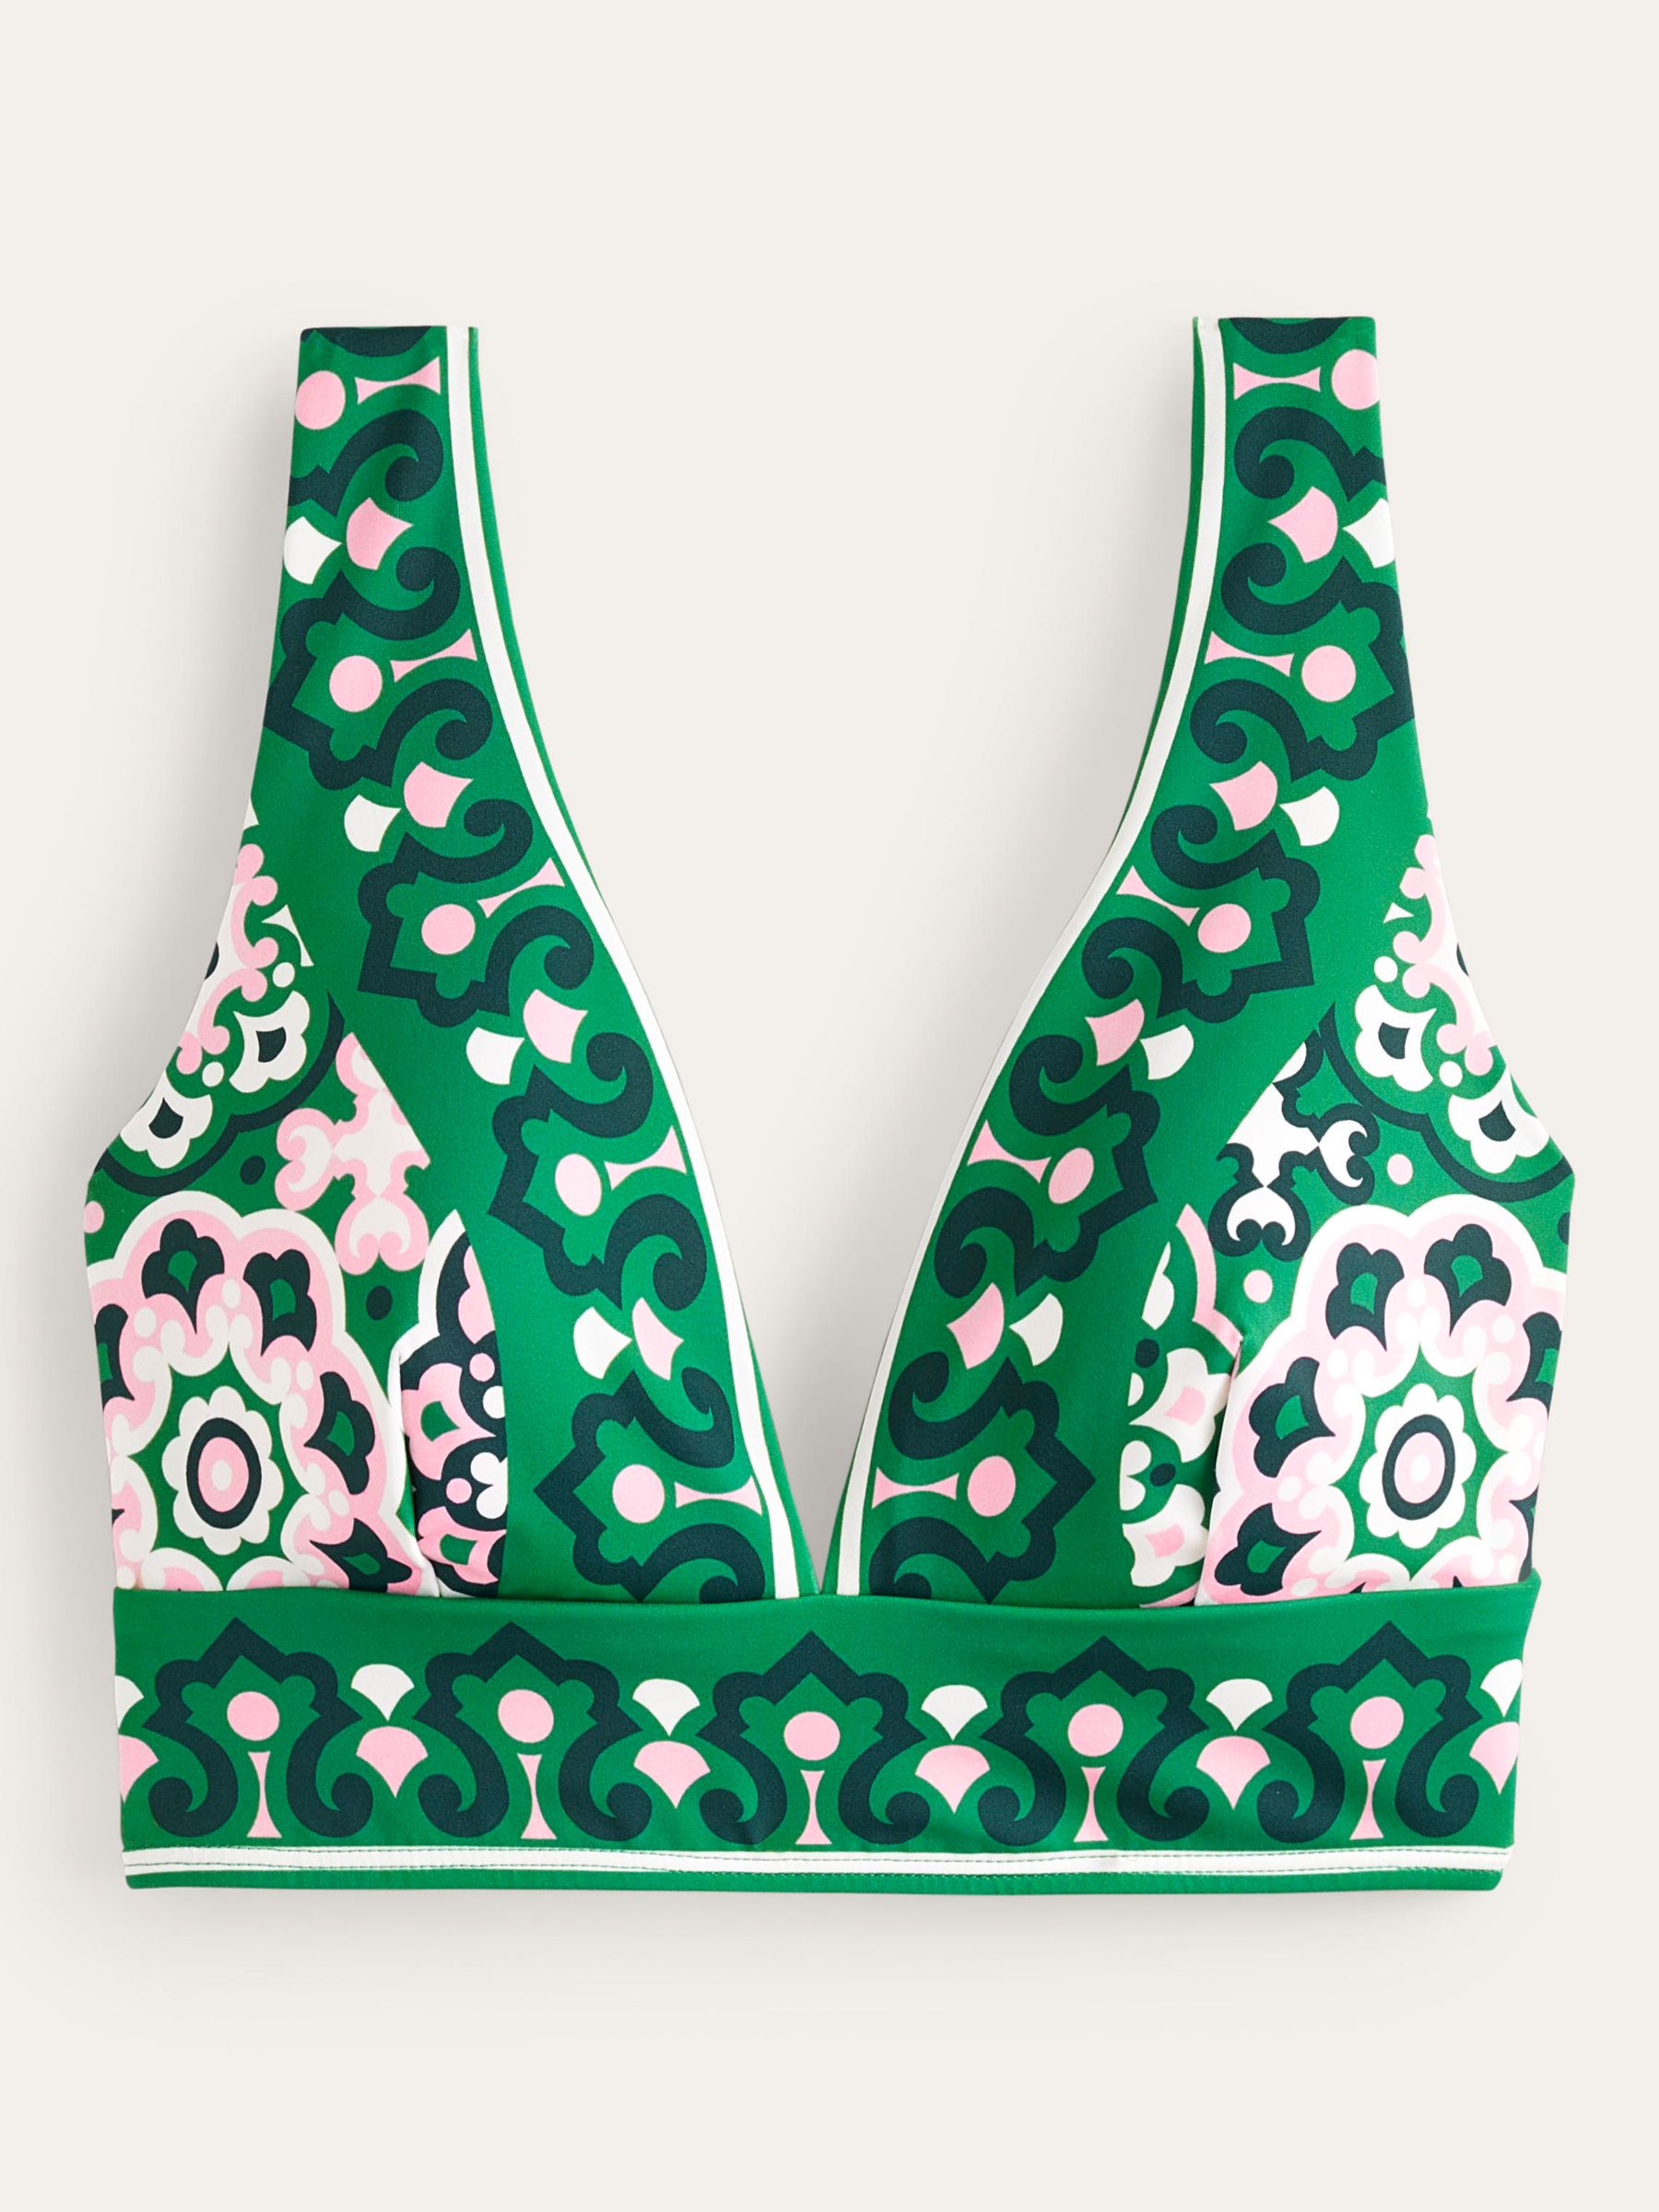 Boden Porto Artisian Geometric Print Bikini Crop Top, Green/Multi, 8